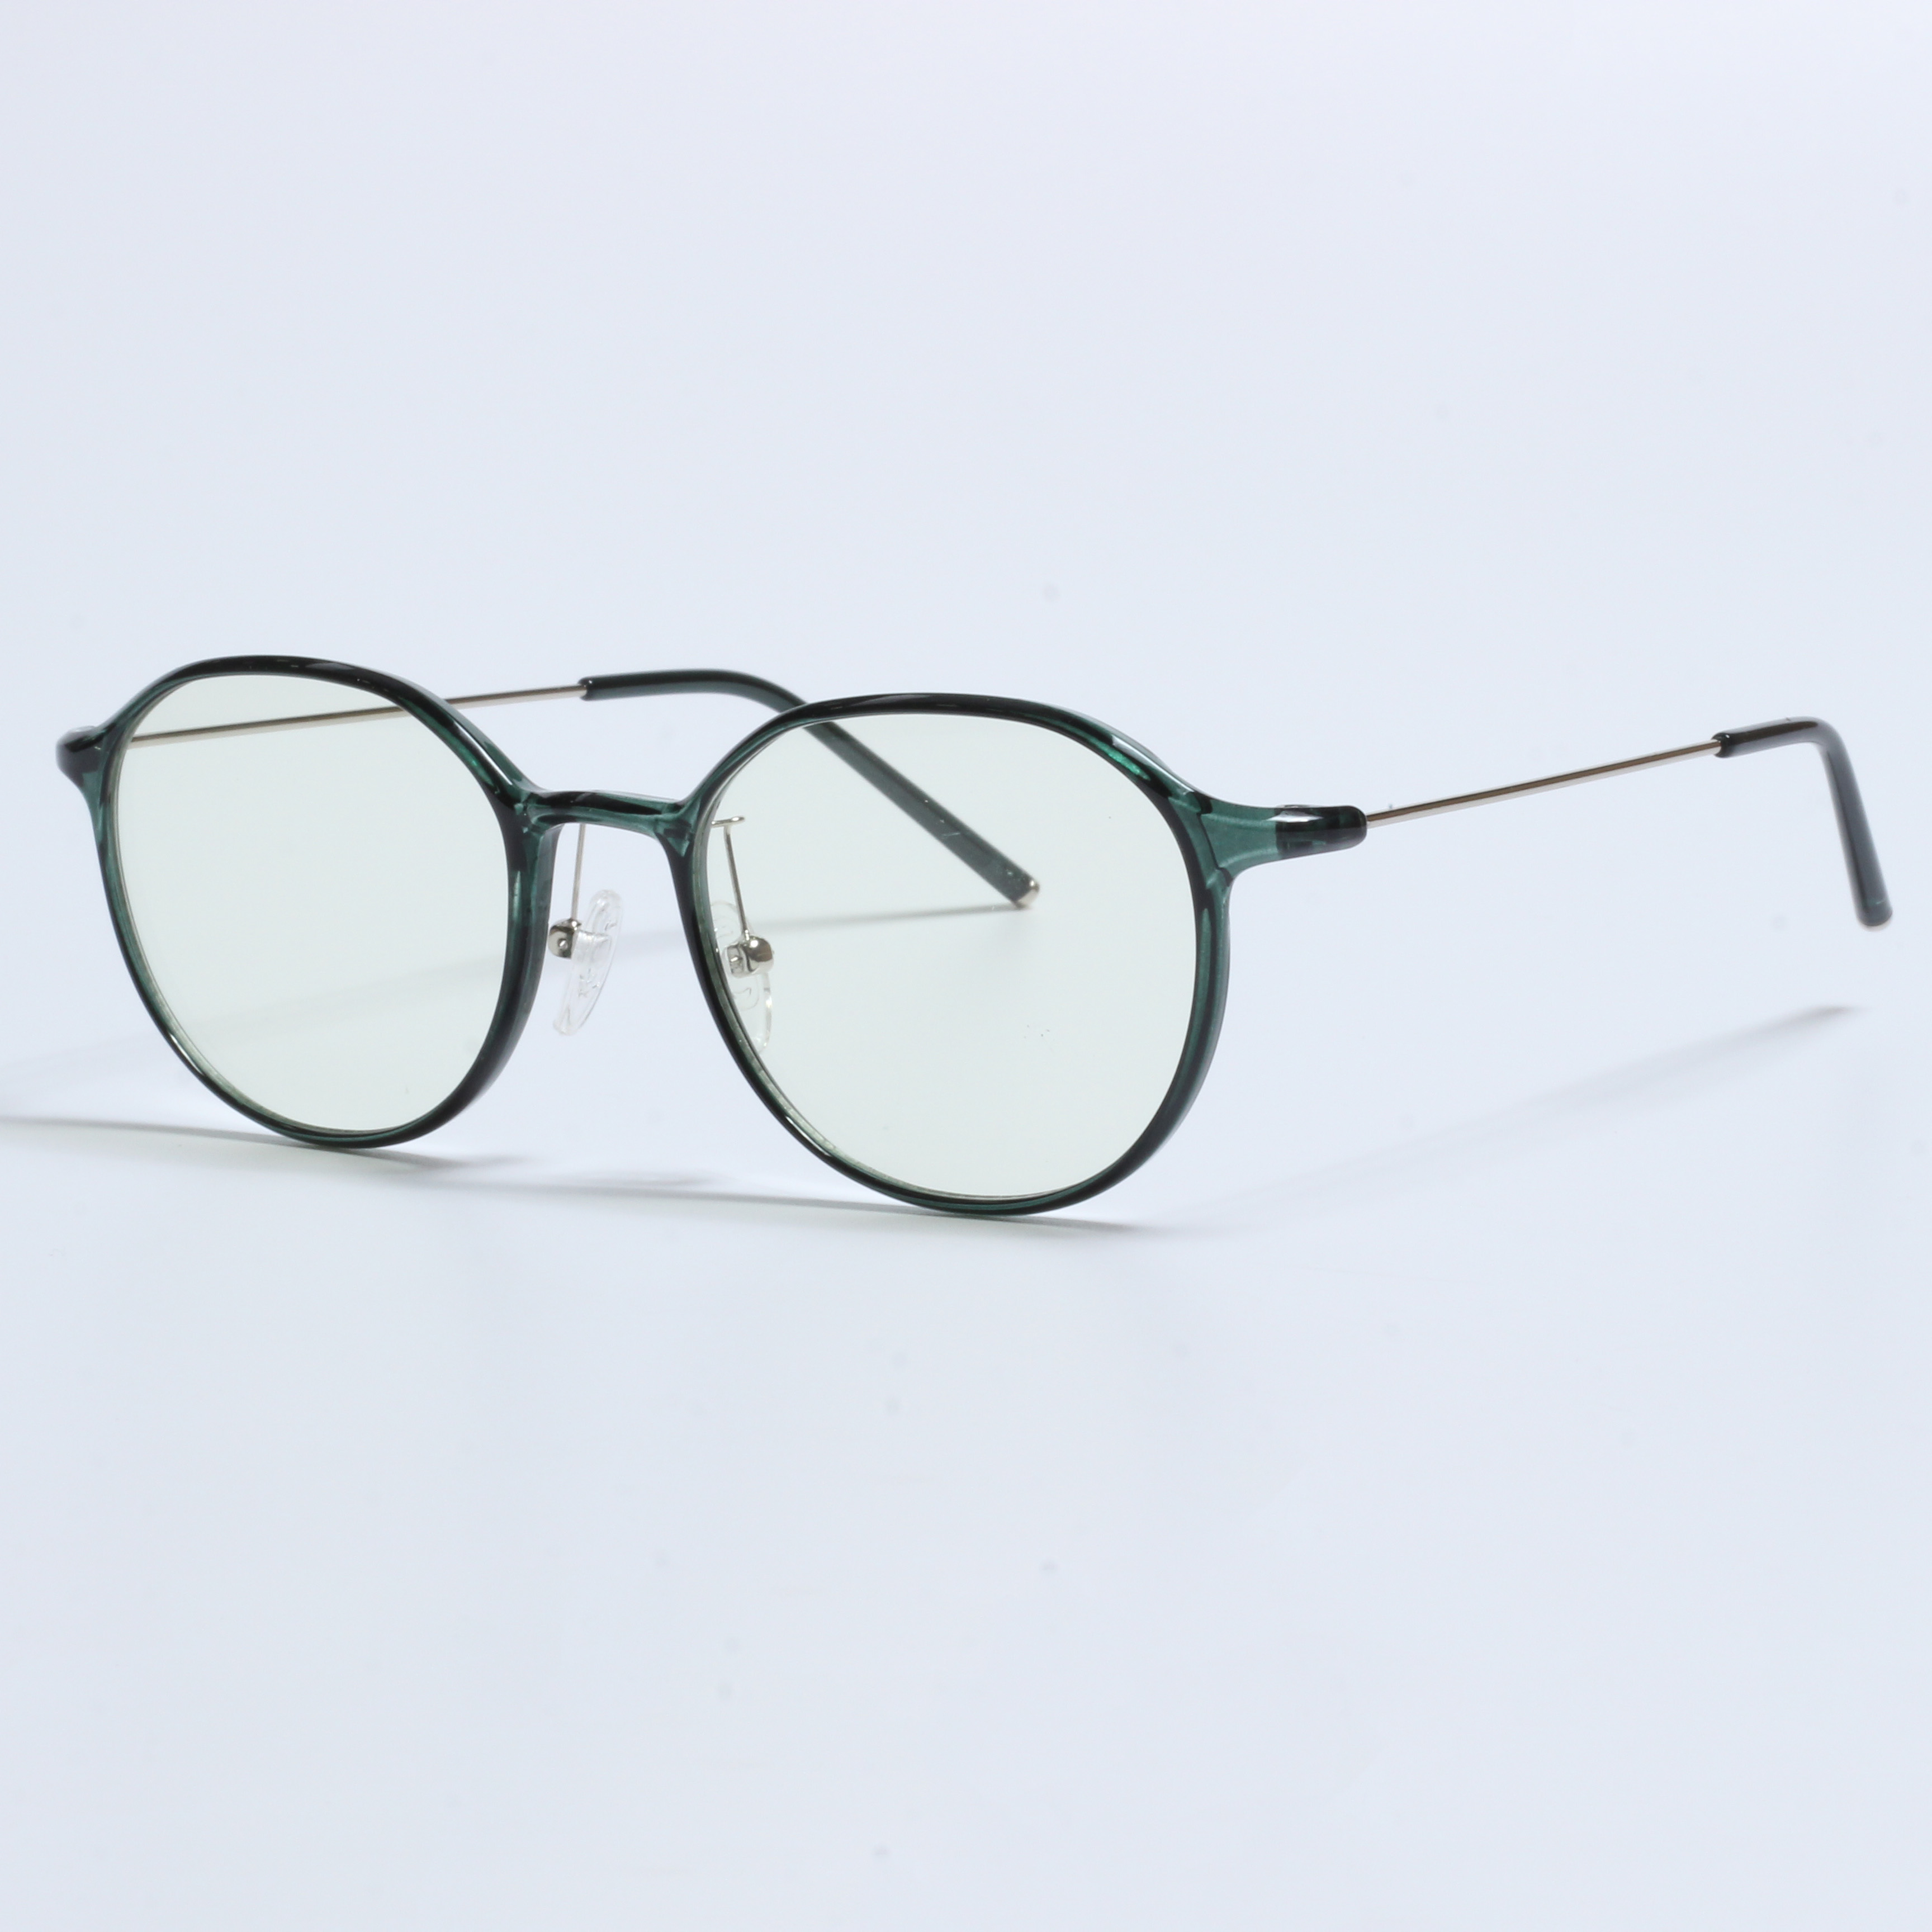 Vintage Thick Gafas Opticas De Hombres Fassarar TR90 Frames (9)